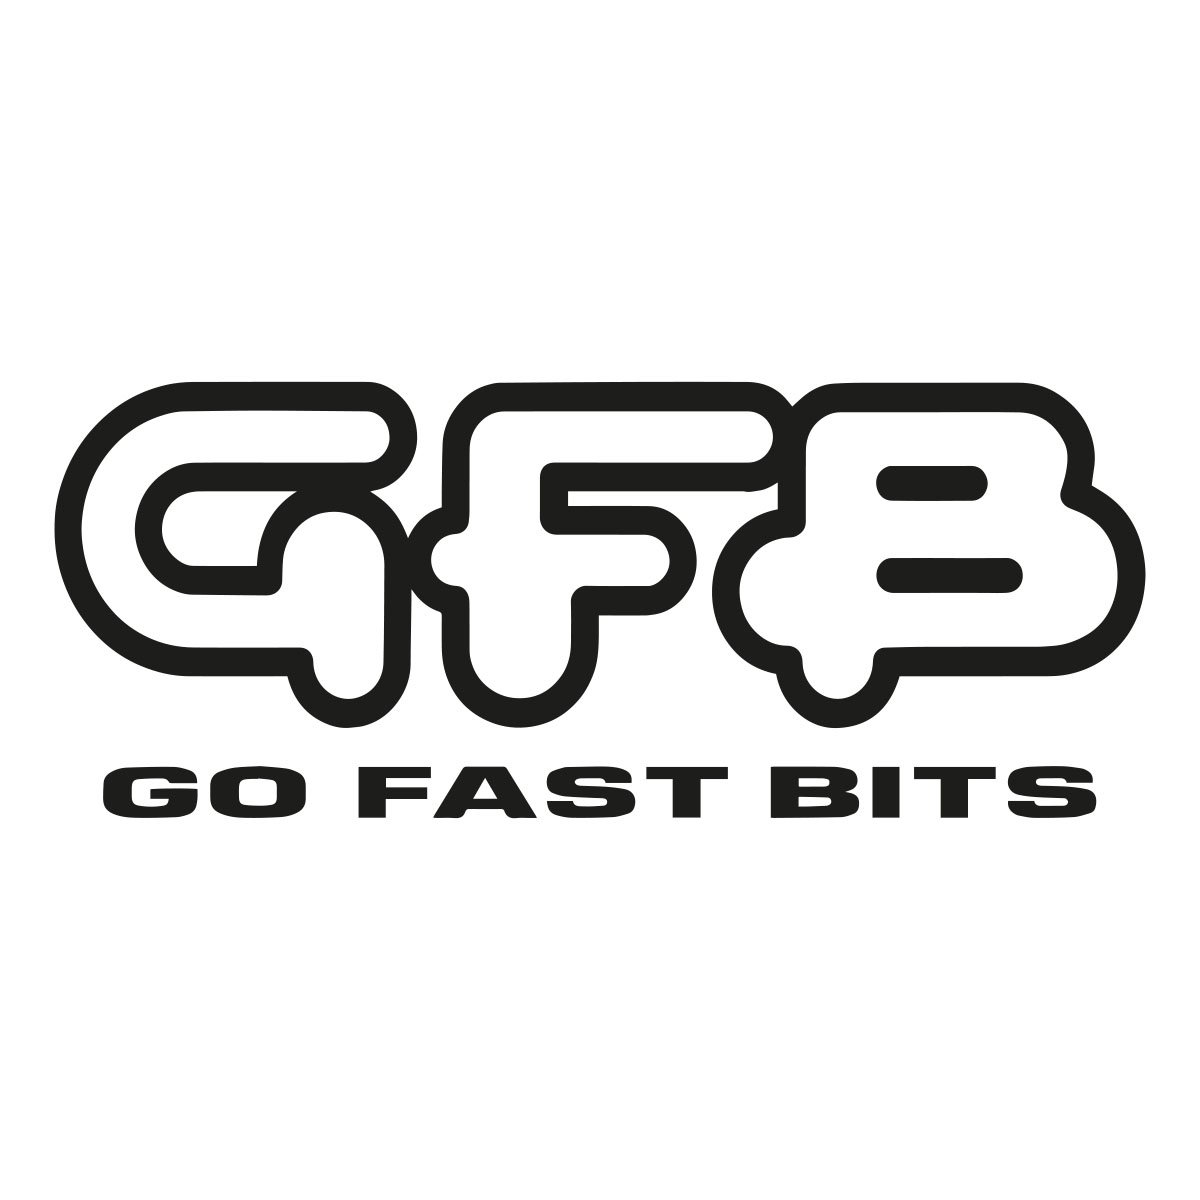 gfb go fast bits